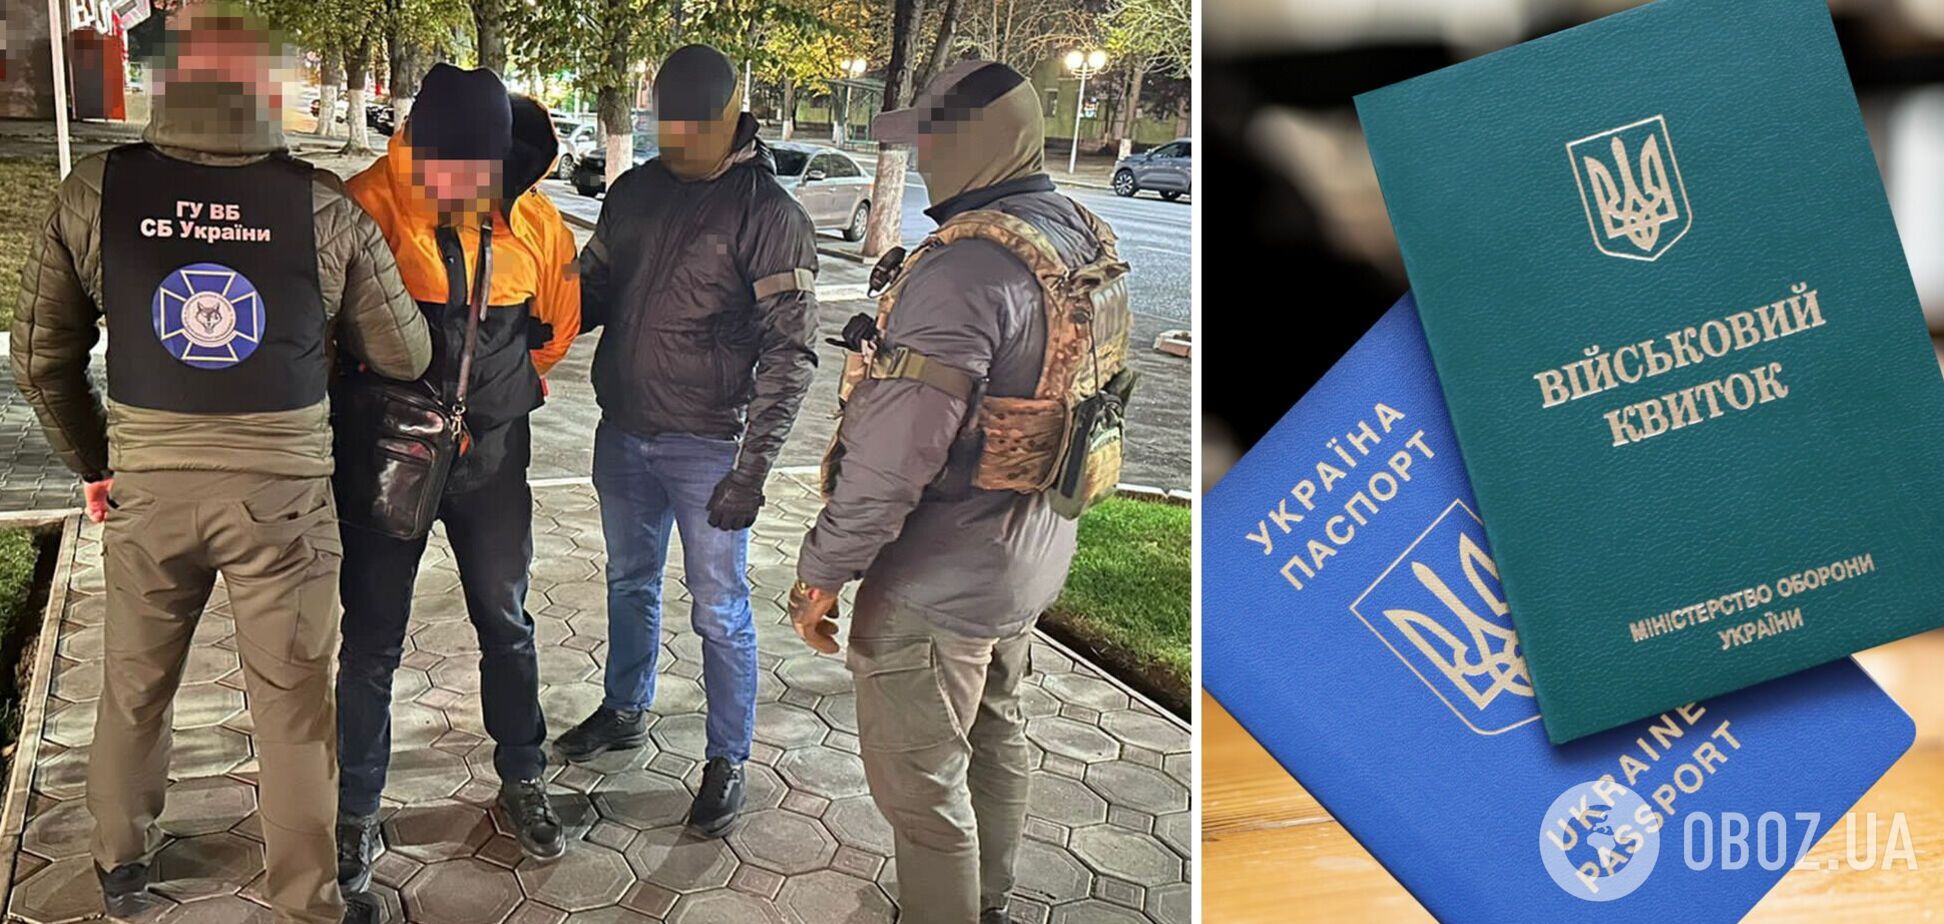 СБУ задержала в Одессе директора кадрового агентства, который переправлял уклонистов в ЕС. Фото